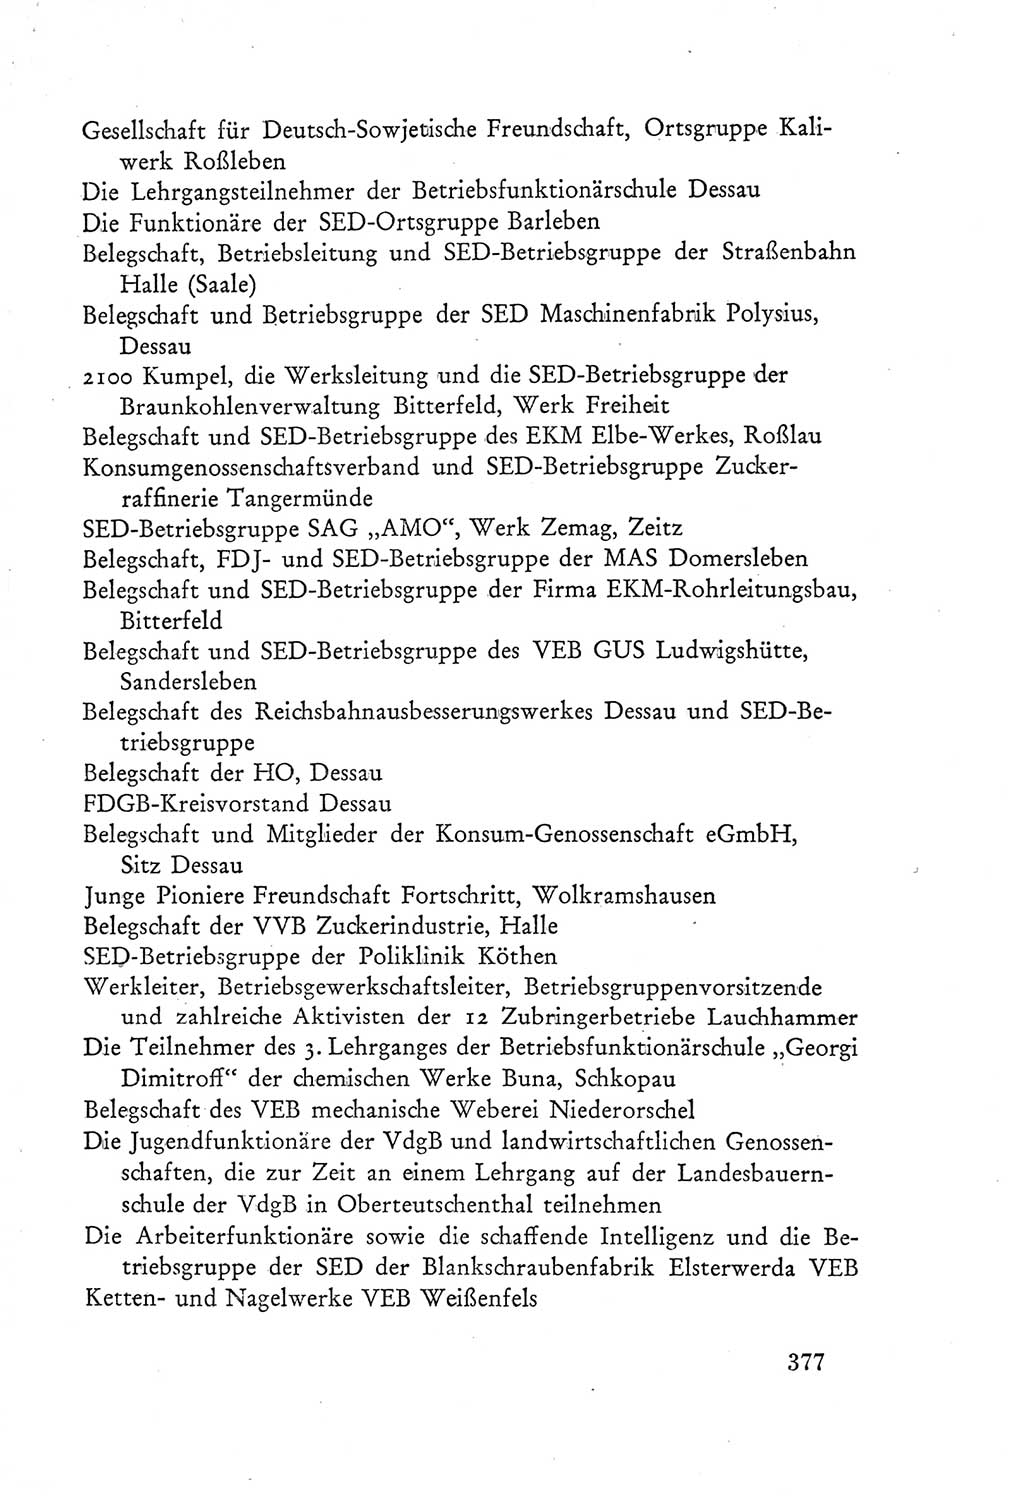 Protokoll der Verhandlungen des Ⅲ. Parteitages der Sozialistischen Einheitspartei Deutschlands (SED) [Deutsche Demokratische Republik (DDR)] 1950, Band 2, Seite 377 (Prot. Verh. Ⅲ. PT SED DDR 1950, Bd. 2, S. 377)